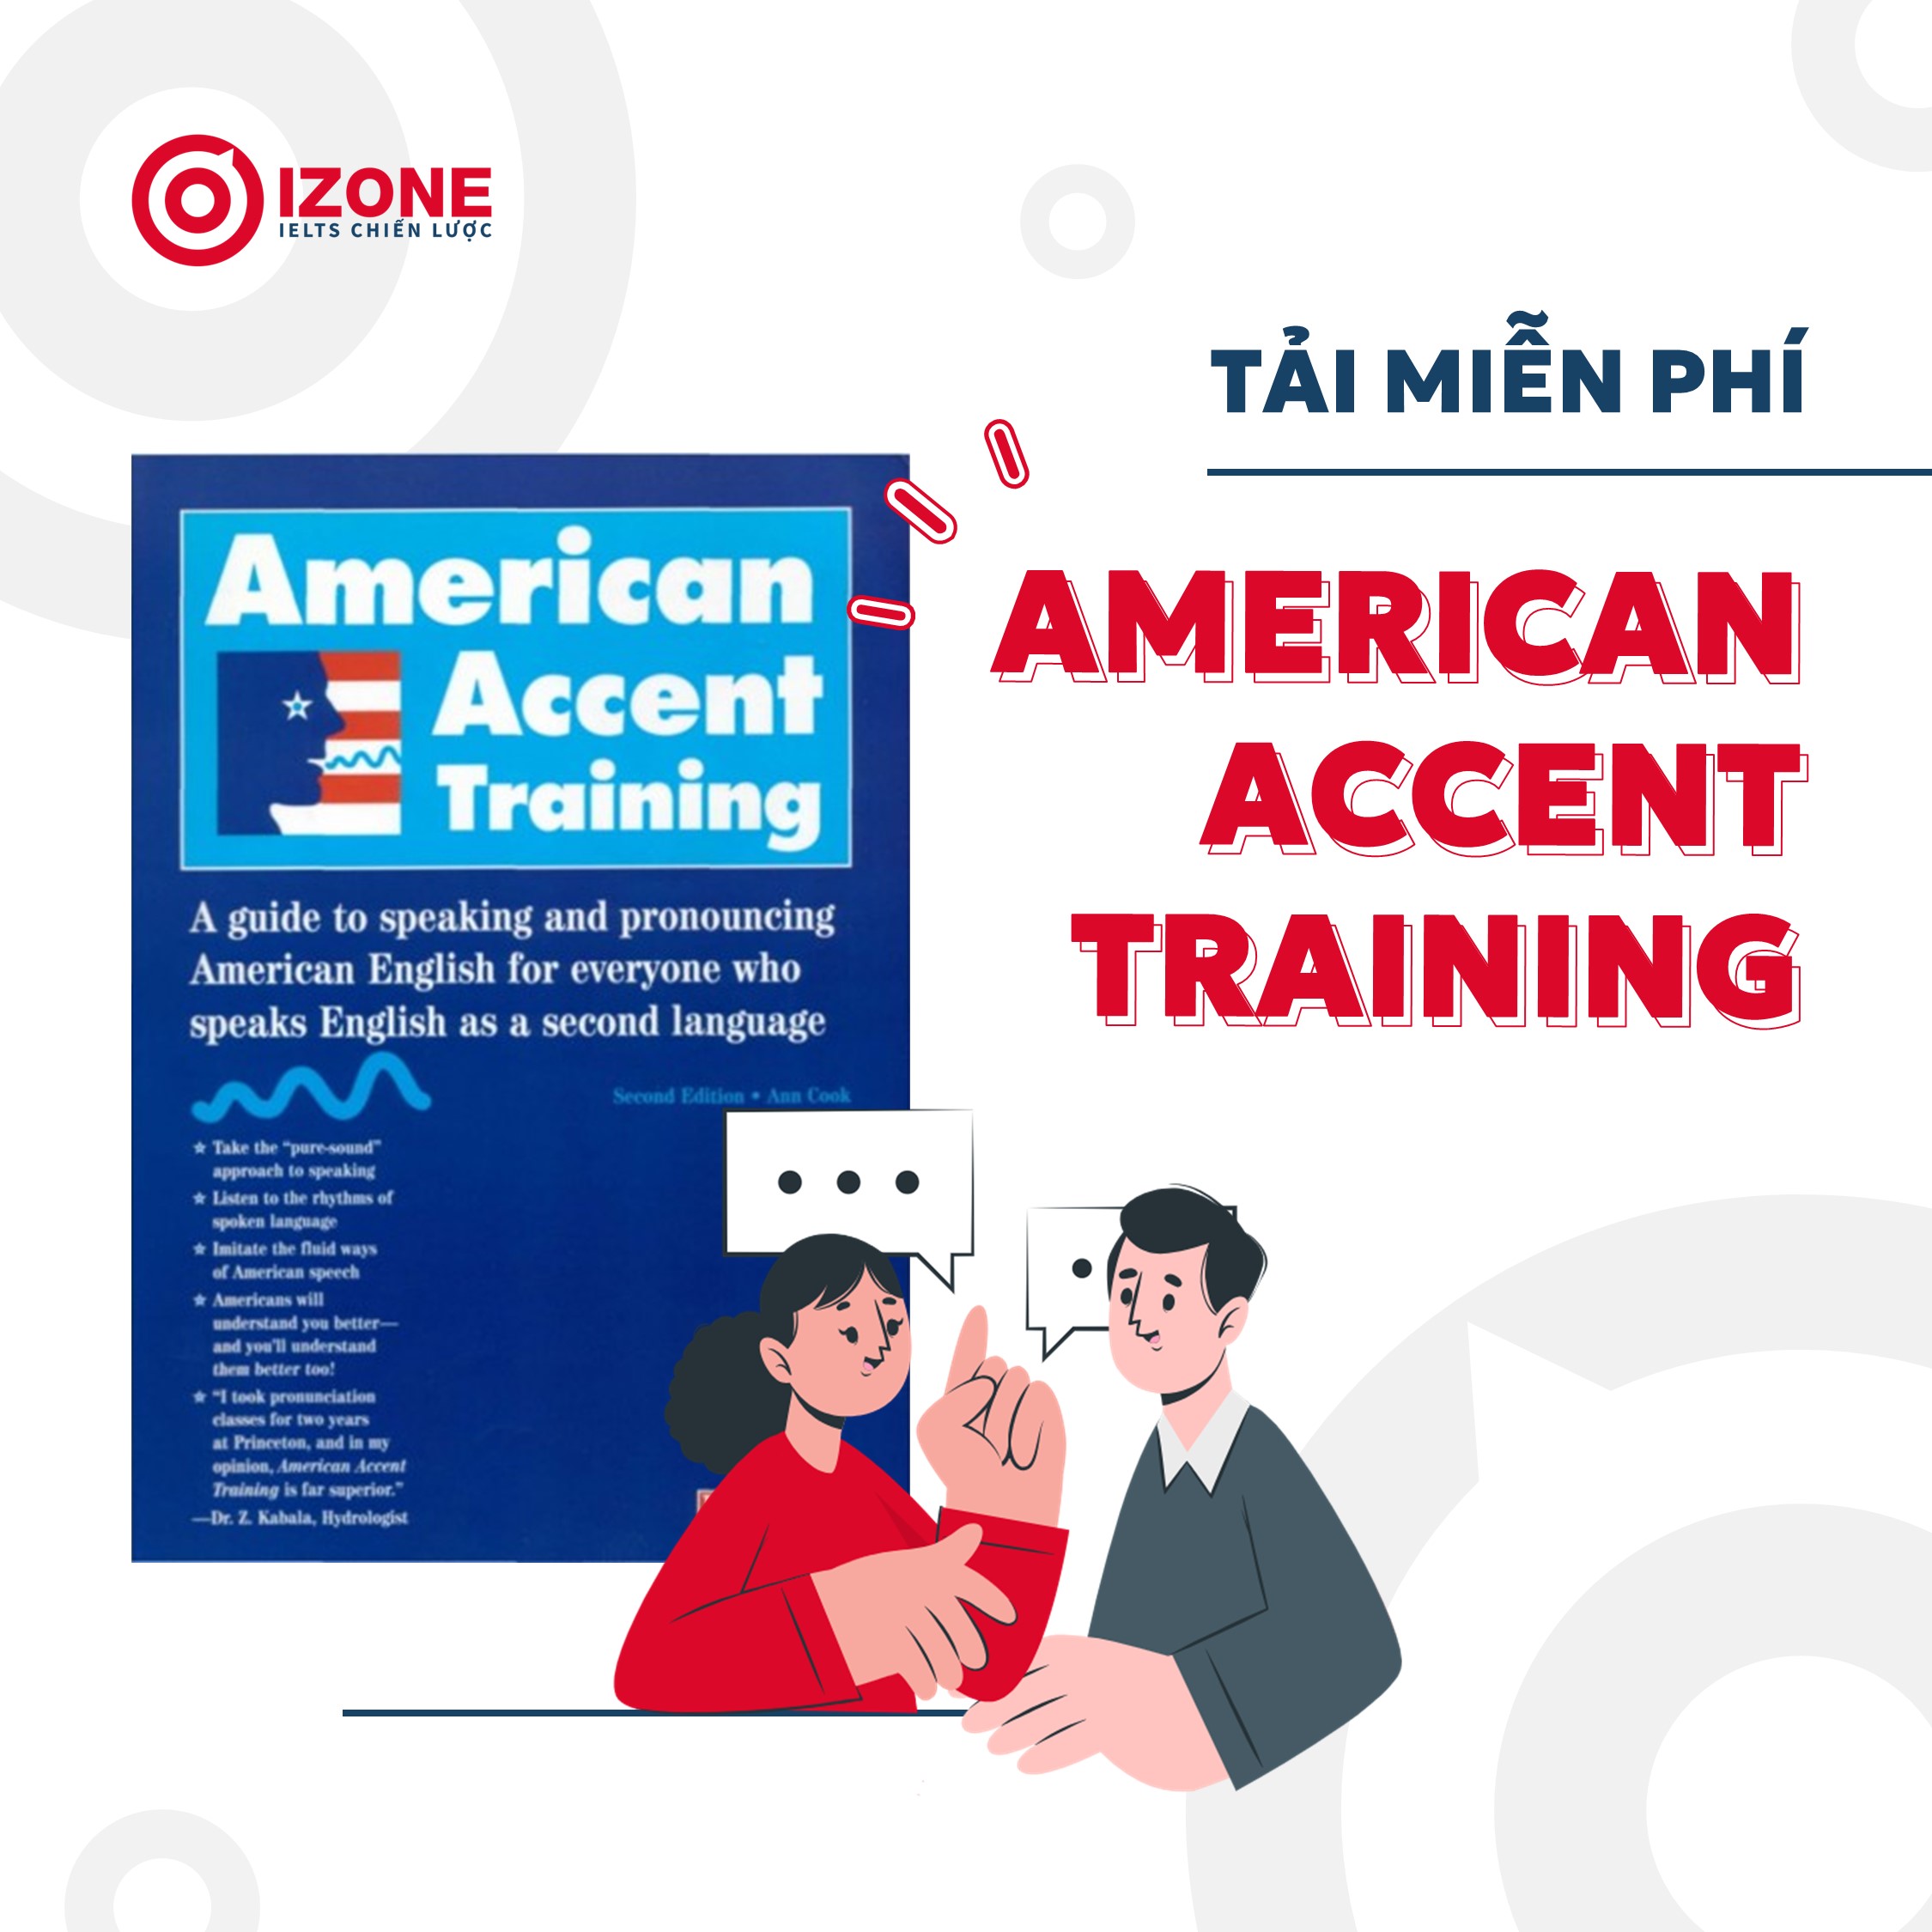 [Tải miễn phí] American accent training Pdf + Audio (bản đẹp)